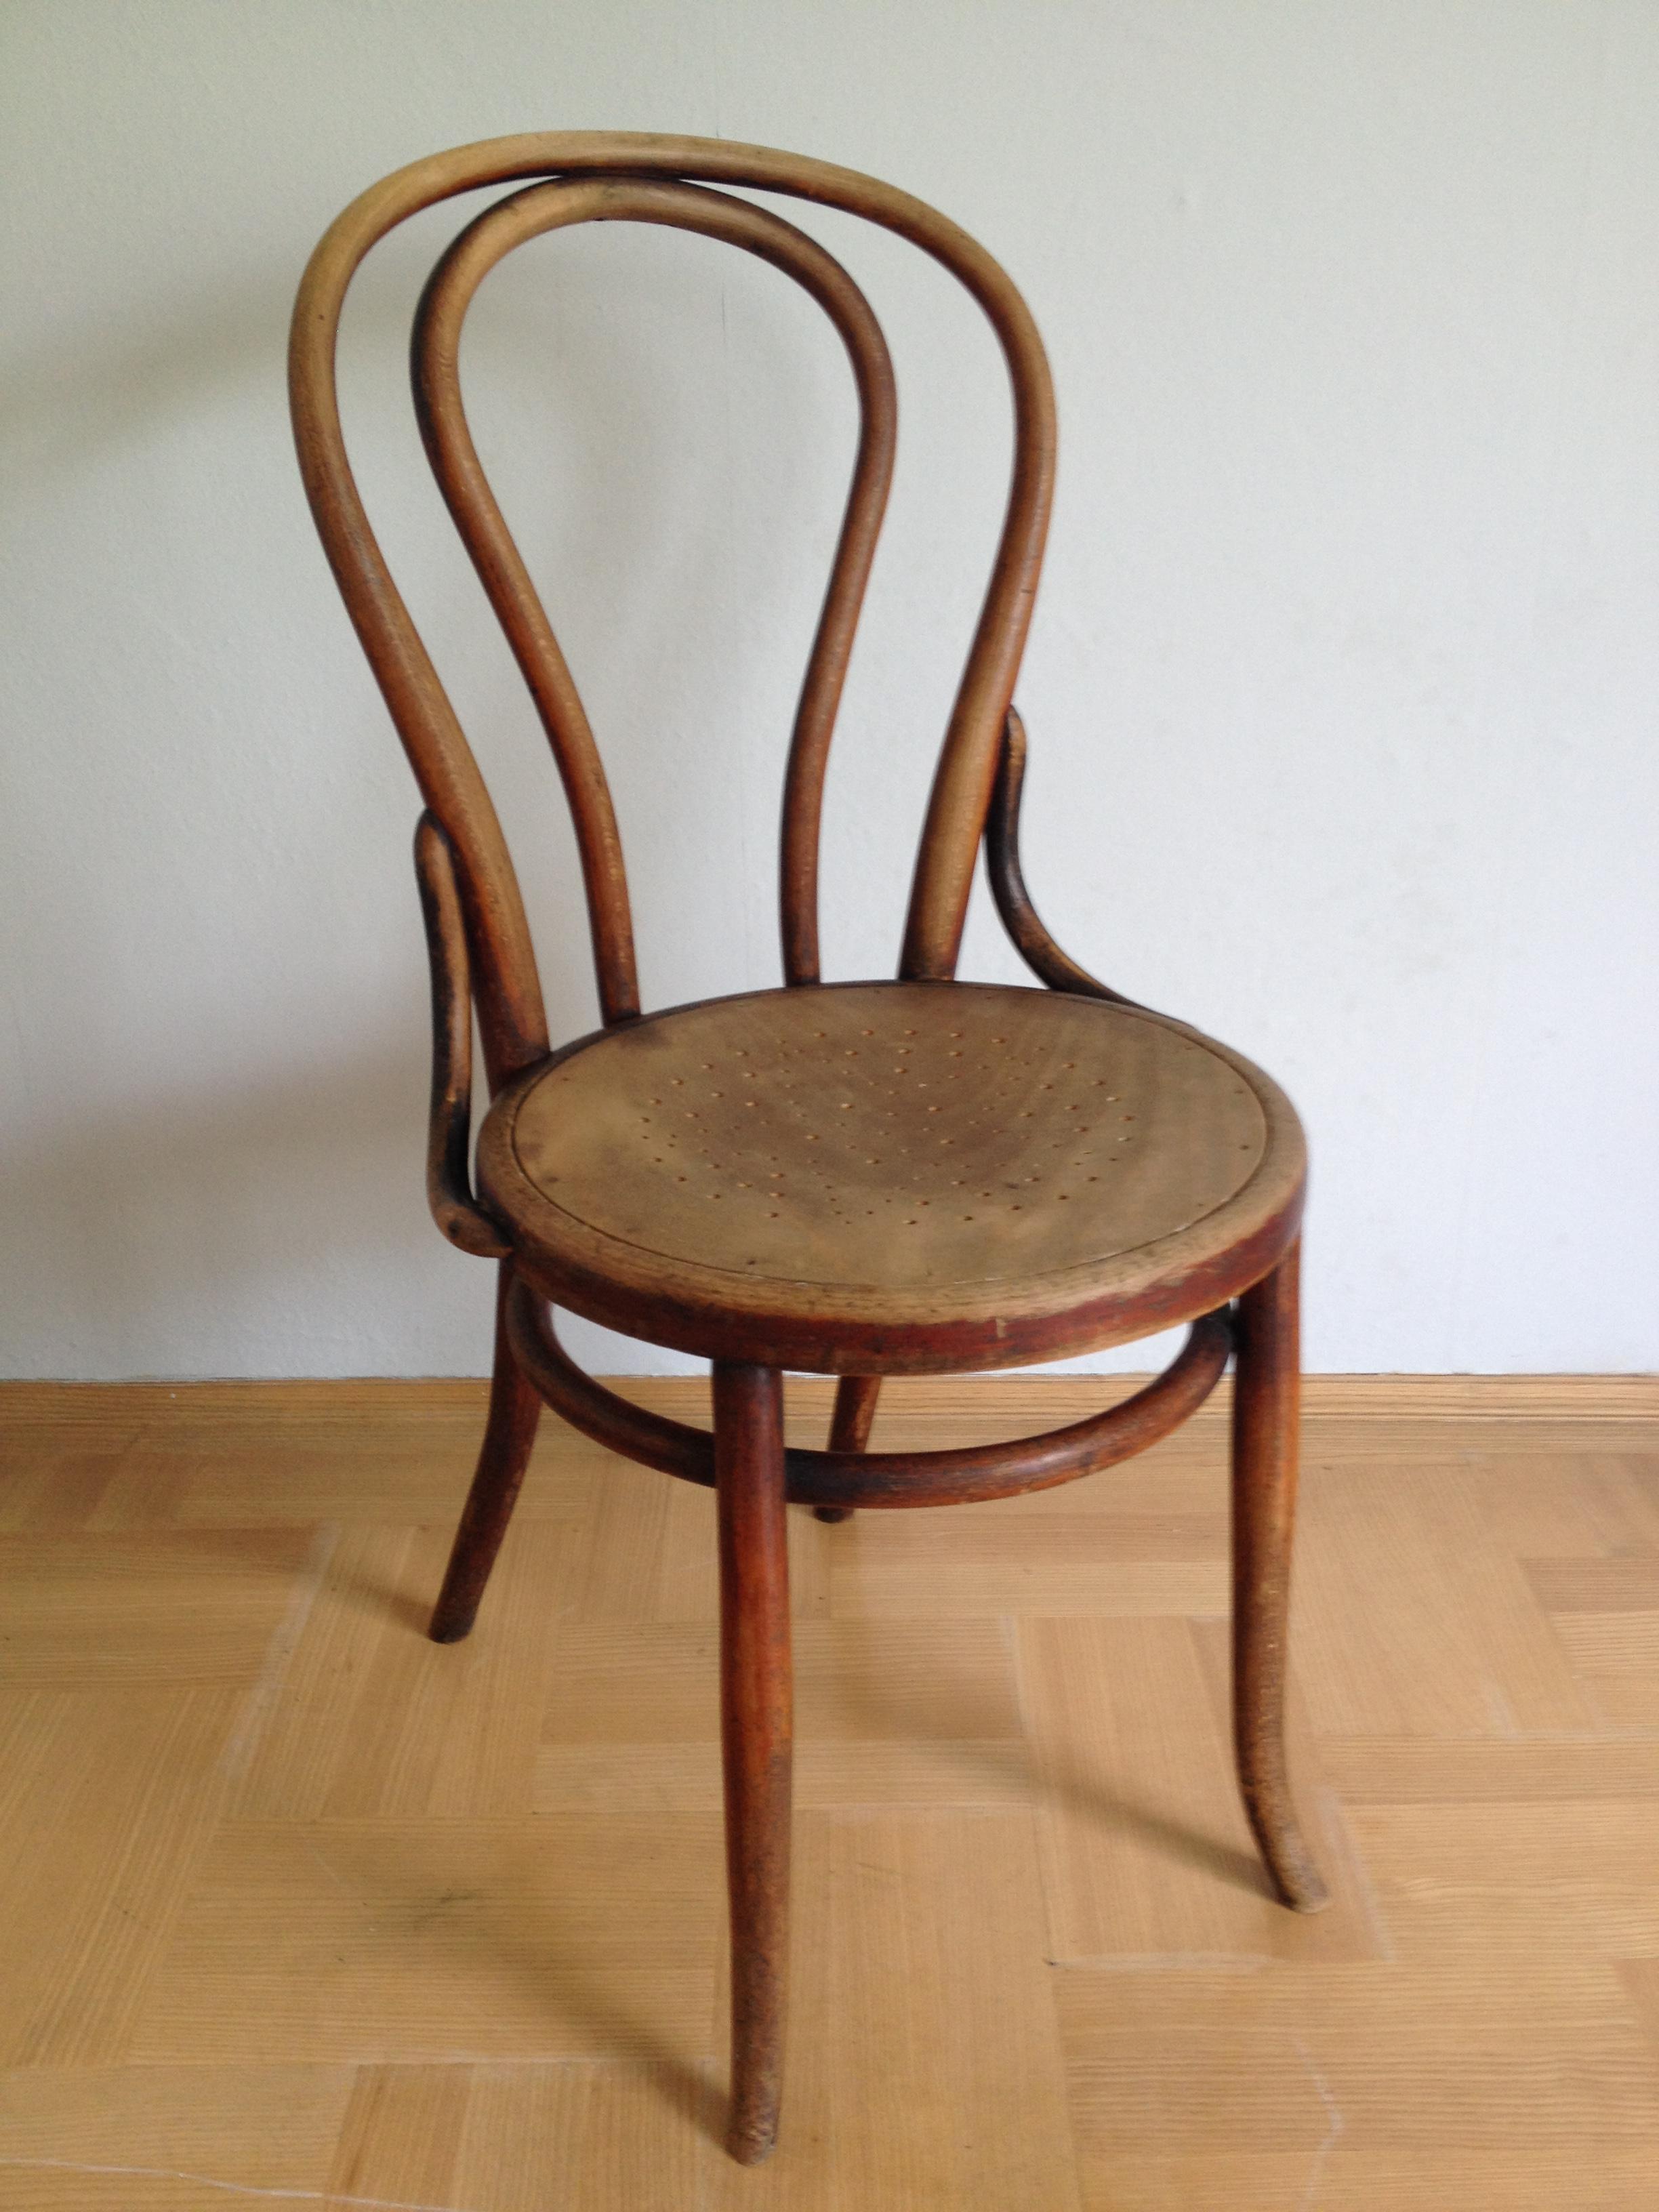 Edles Stück mit herrlicher Patina, Sitzfläche Sperrholz gelocht, Sitzh. 46 cm, h 92 cm, b 40 cm